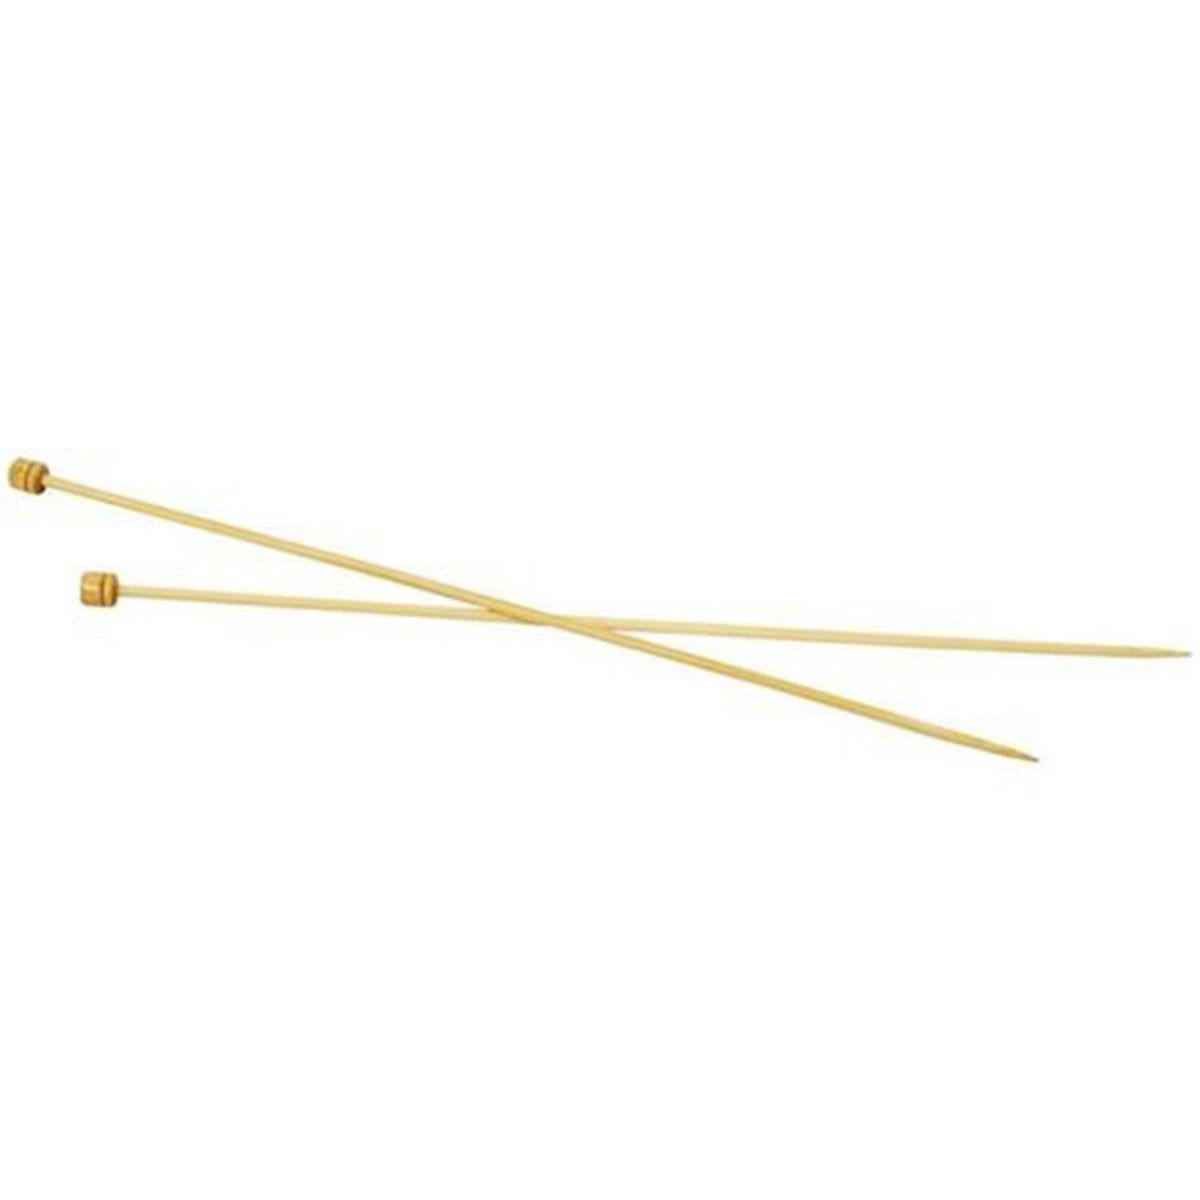  2 Aiguilles À Tricoter En Bambou 35 cm - Ø 4 mm